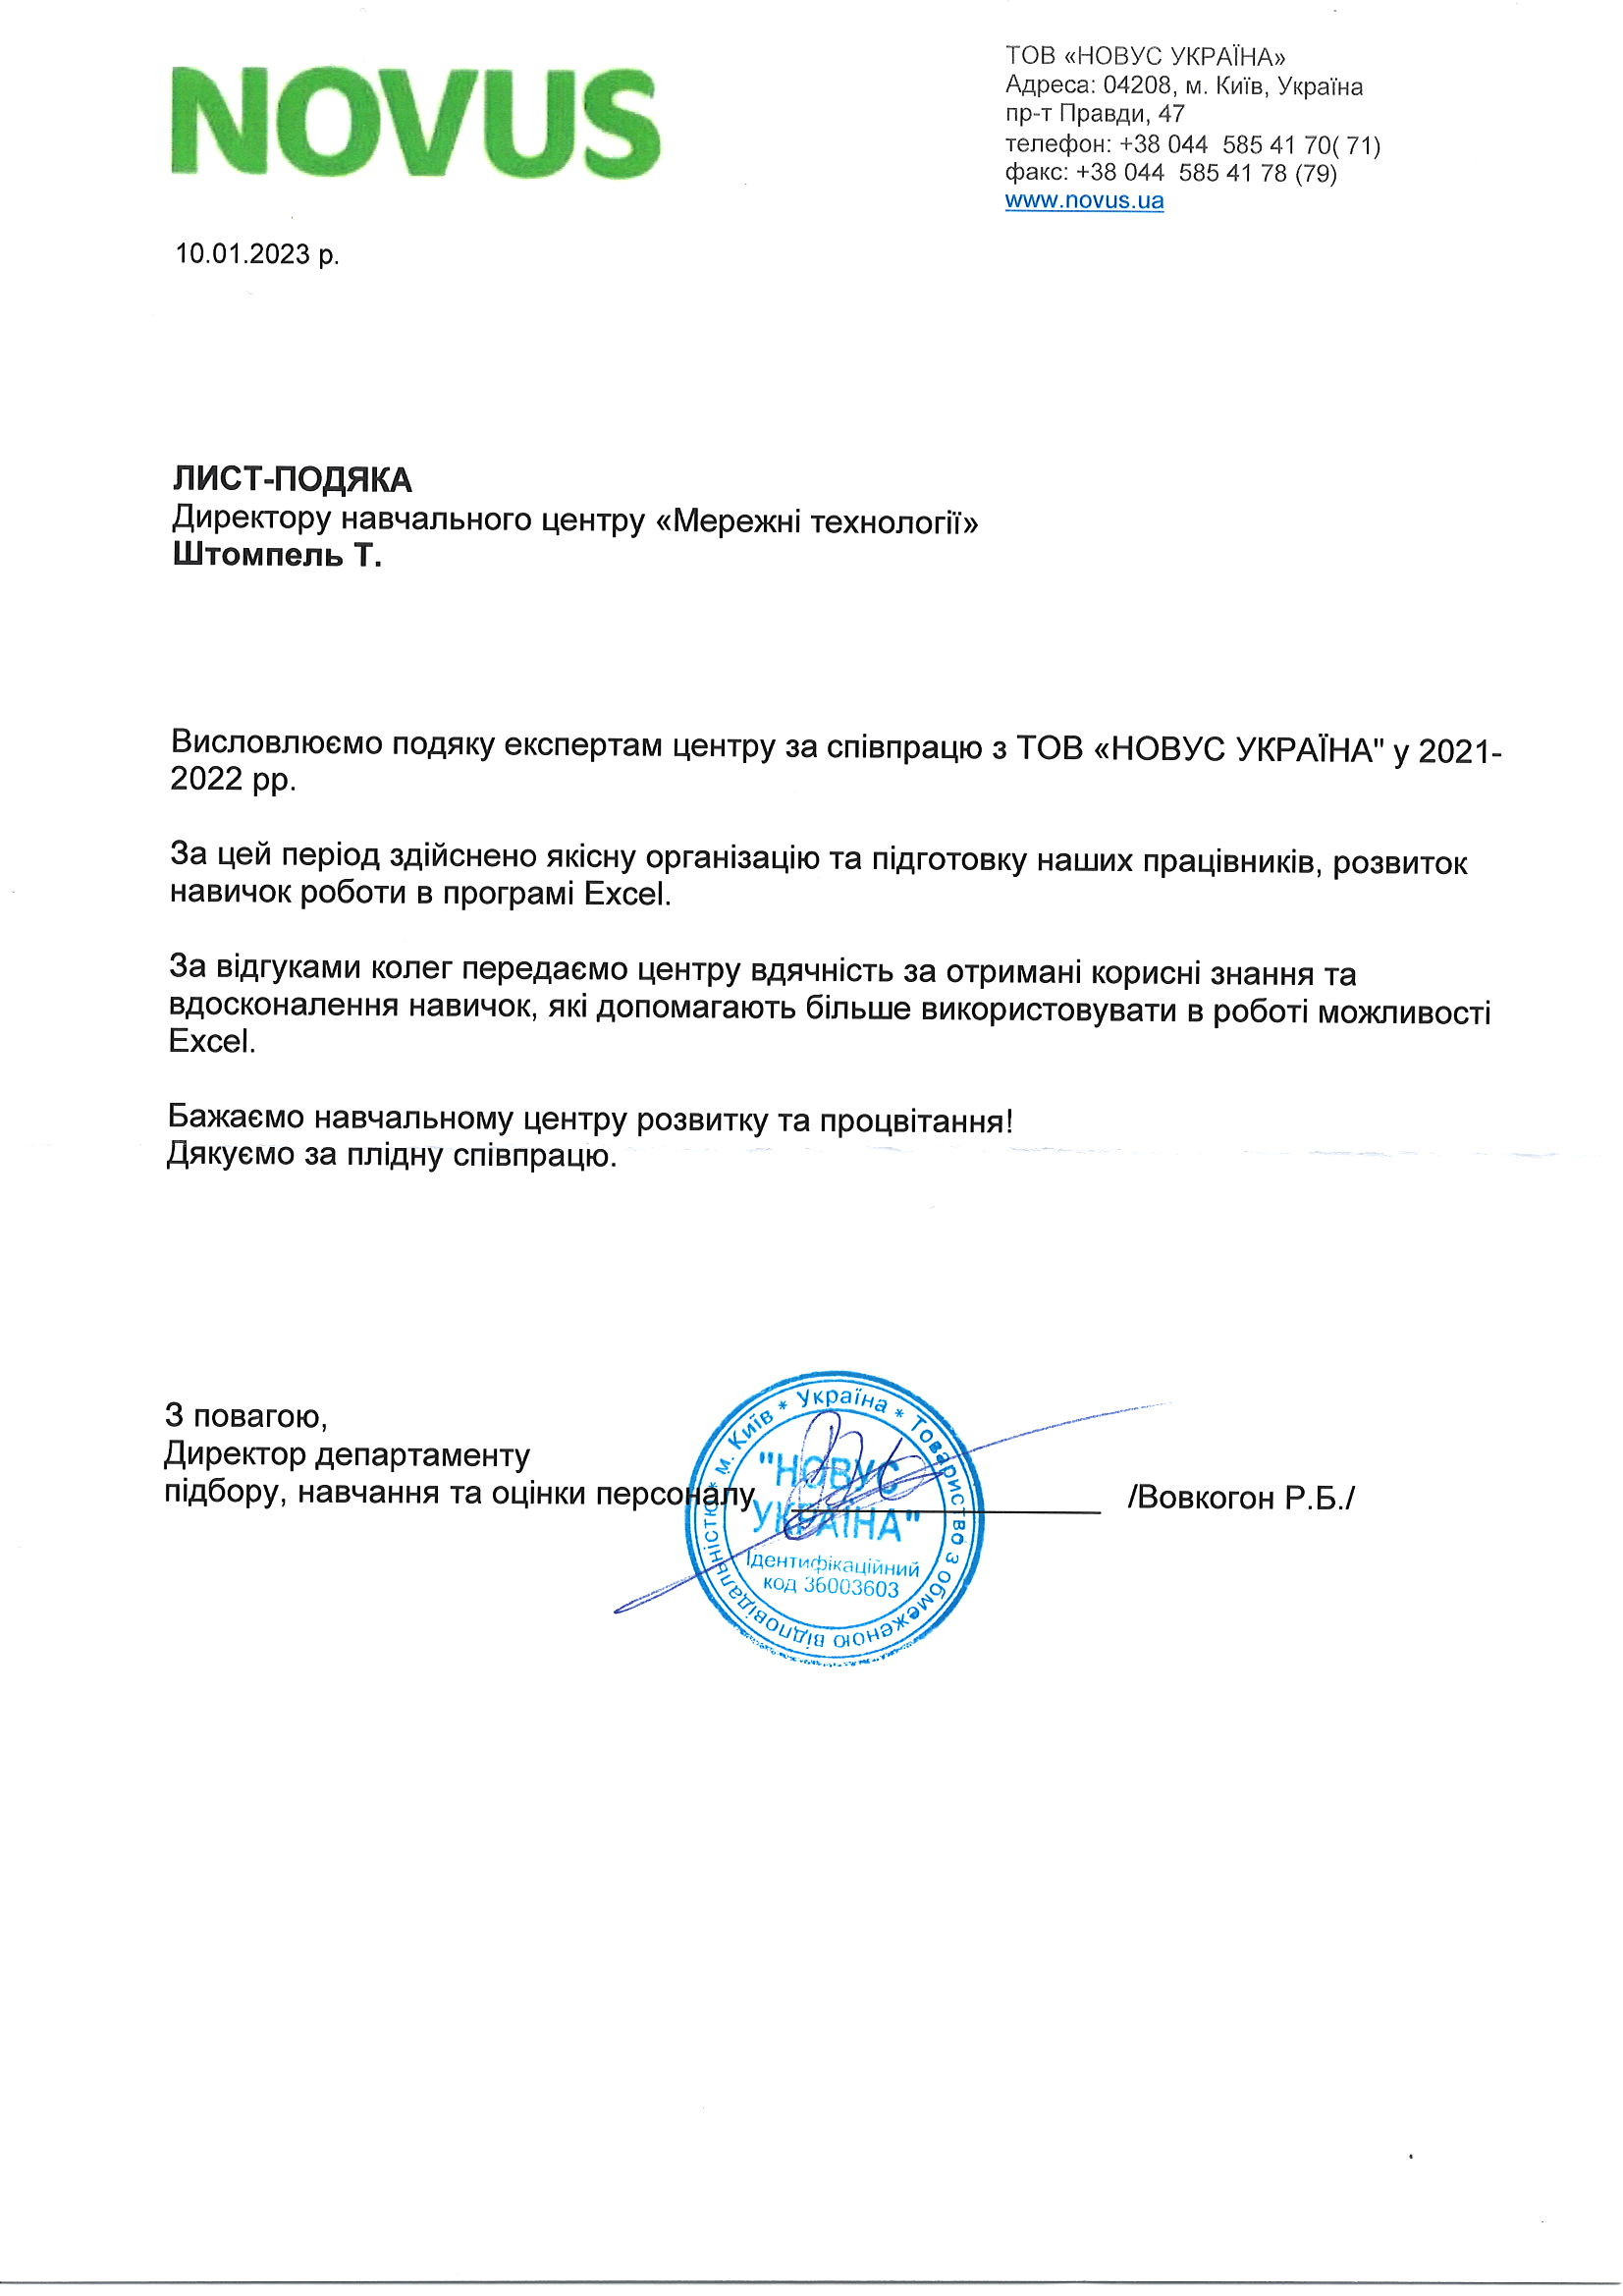 Отзыв компании ООО «Новус Украина» об УЦ Сетевые Технологии, 2023 р.